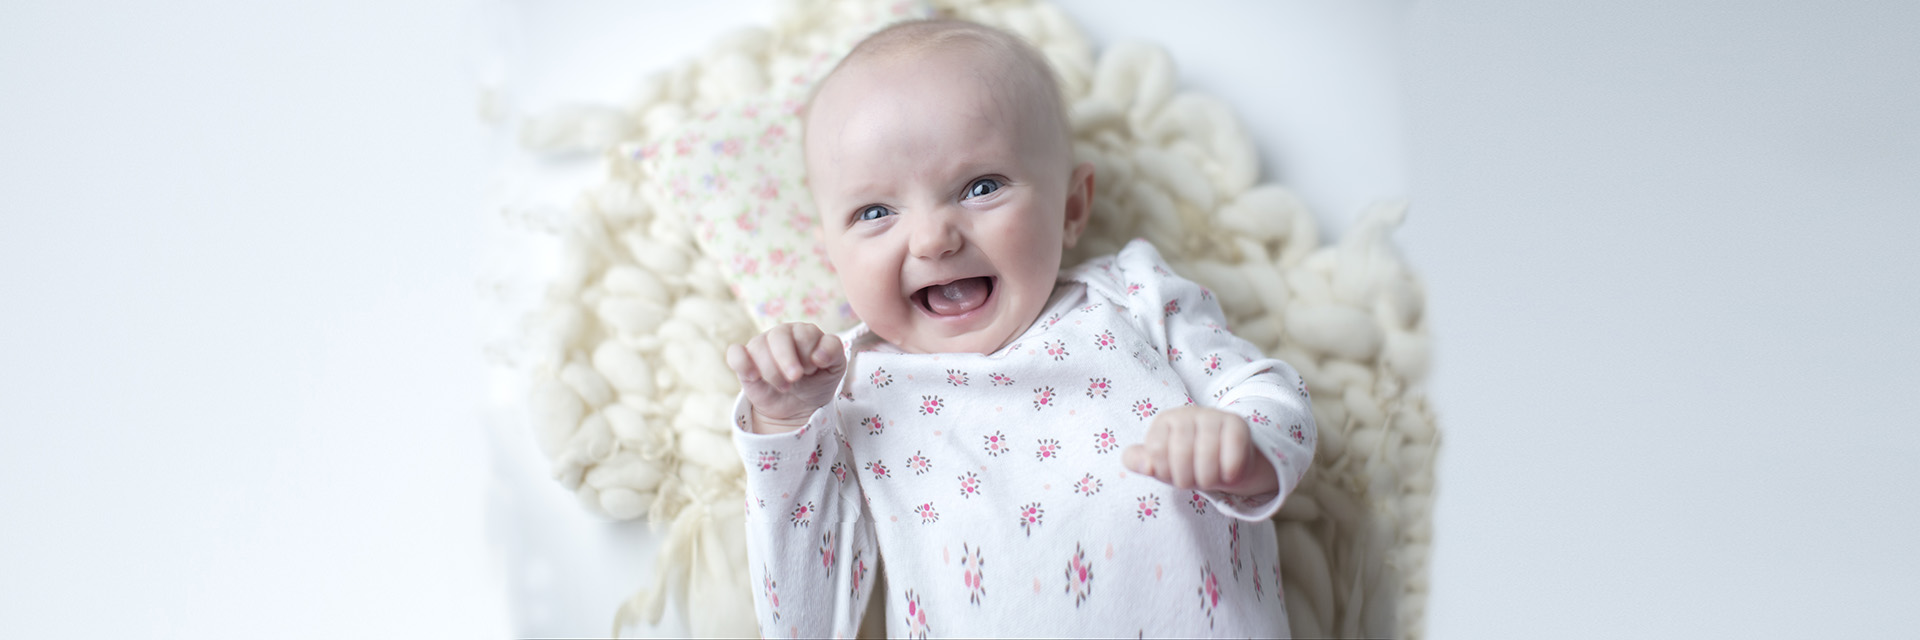 Newborn Baby Laughing